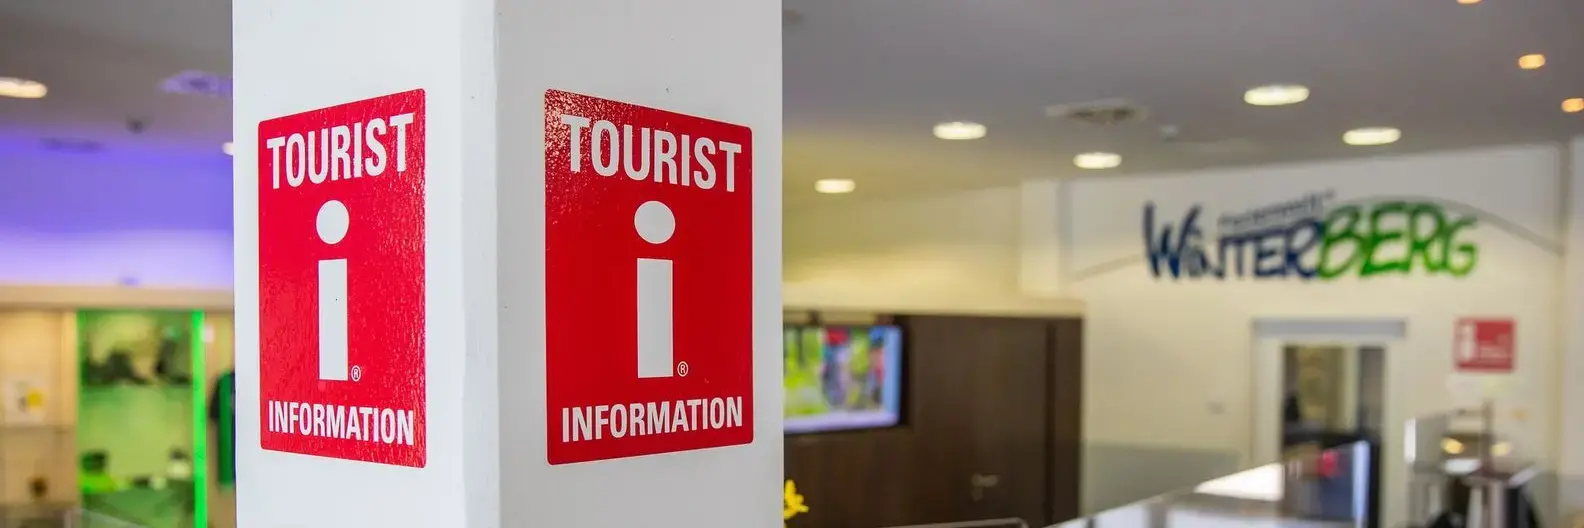 Das Logo für Tourist Informationen an einem Pfeiler mit dem Counter der Tourist Information im Hintergrund.